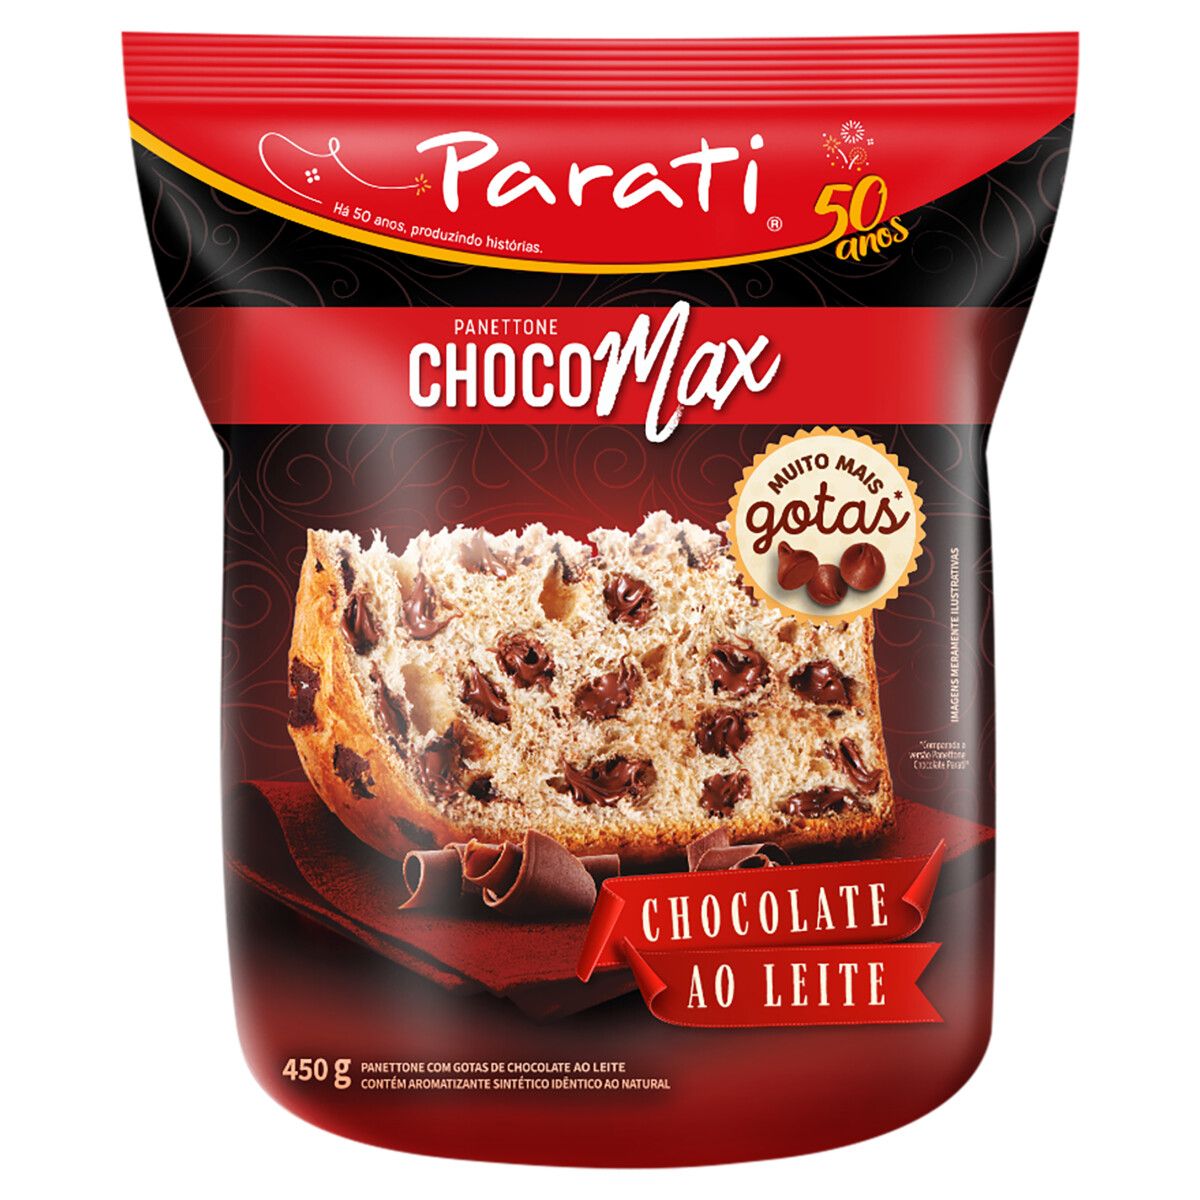 Panettone com Gotas de Chocolate ao Leite Parati Choco Max Pacote 450g